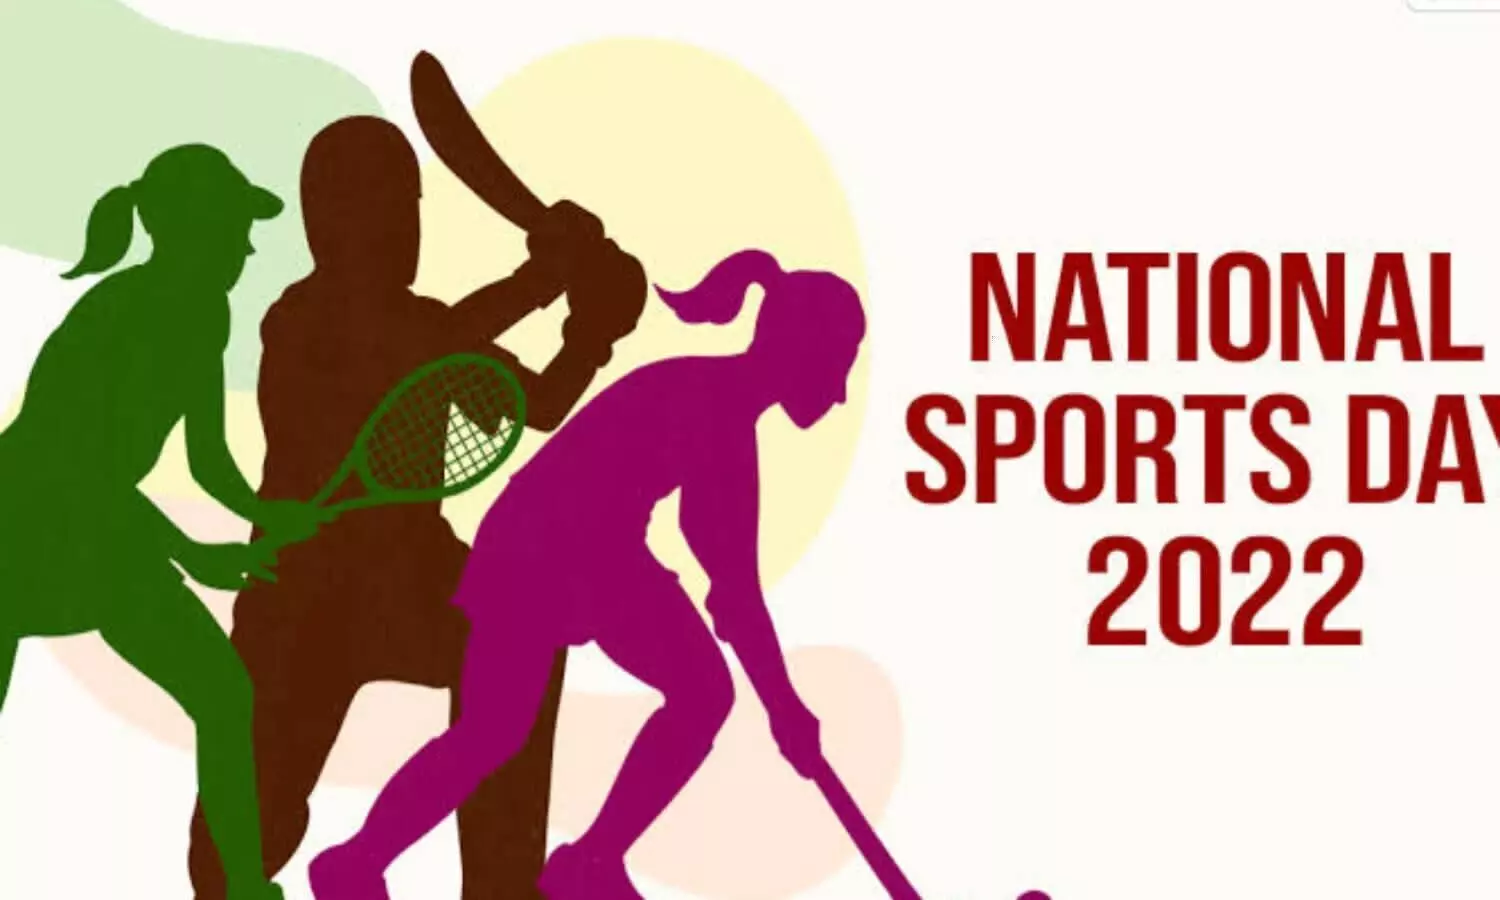 National Sports Day: बरून सोबती से लेकर गुरमीत चौधरी तक इन टीवी सितारों को पसंद है गेम खेलना